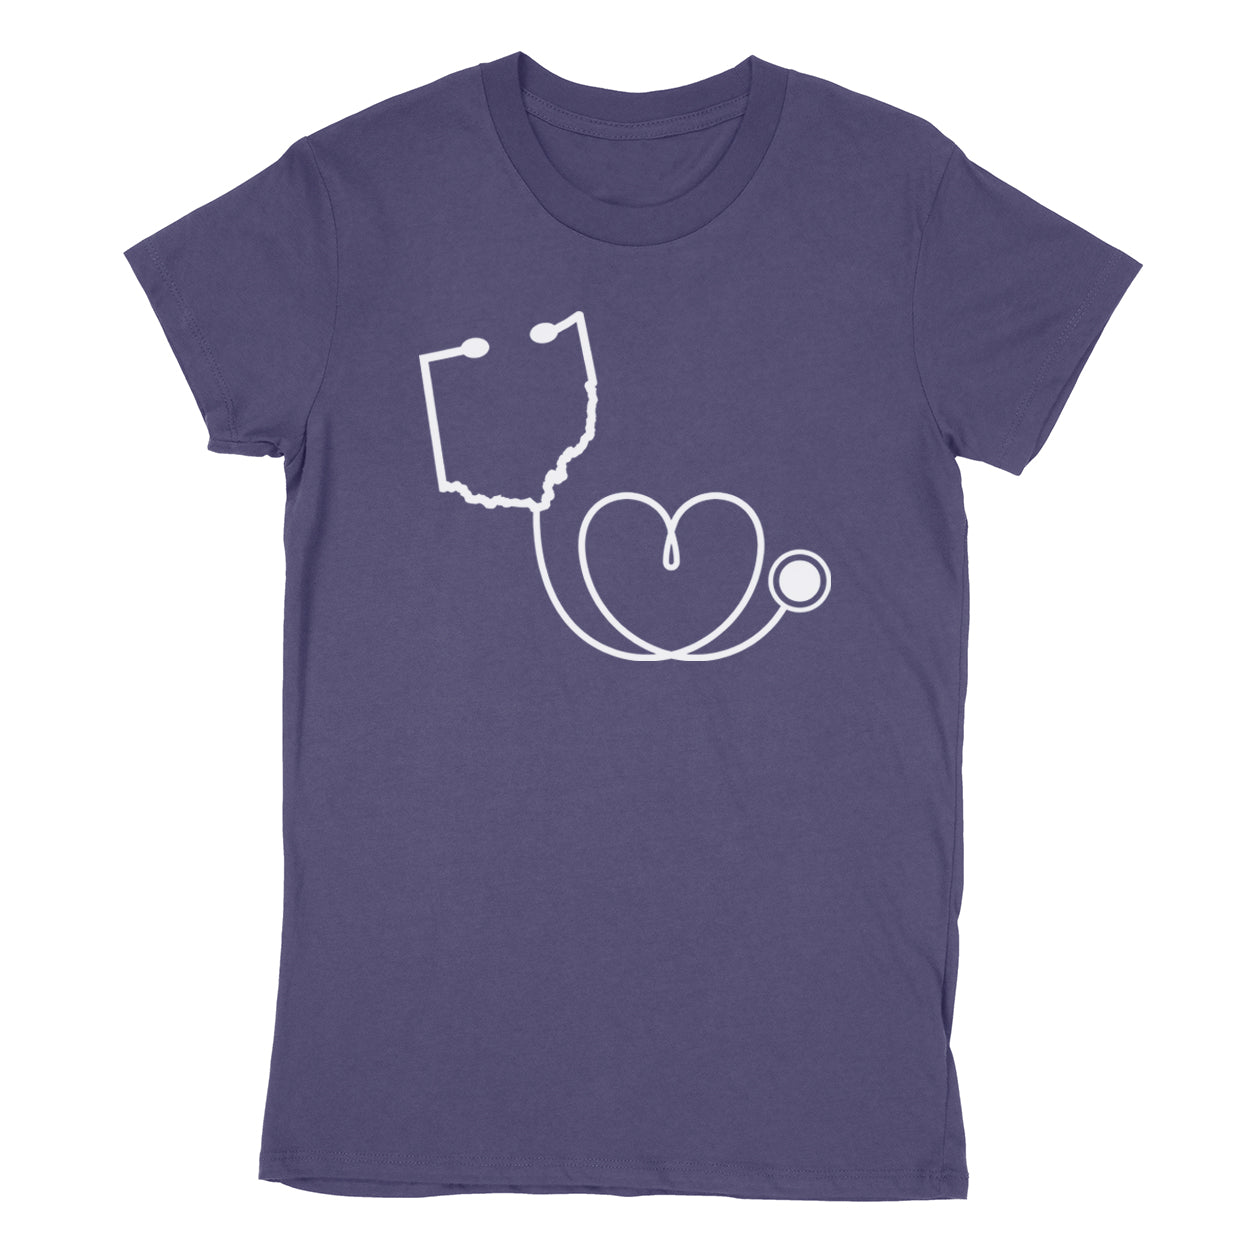 Ohio Loves Healthcare - Women's T-Shirt